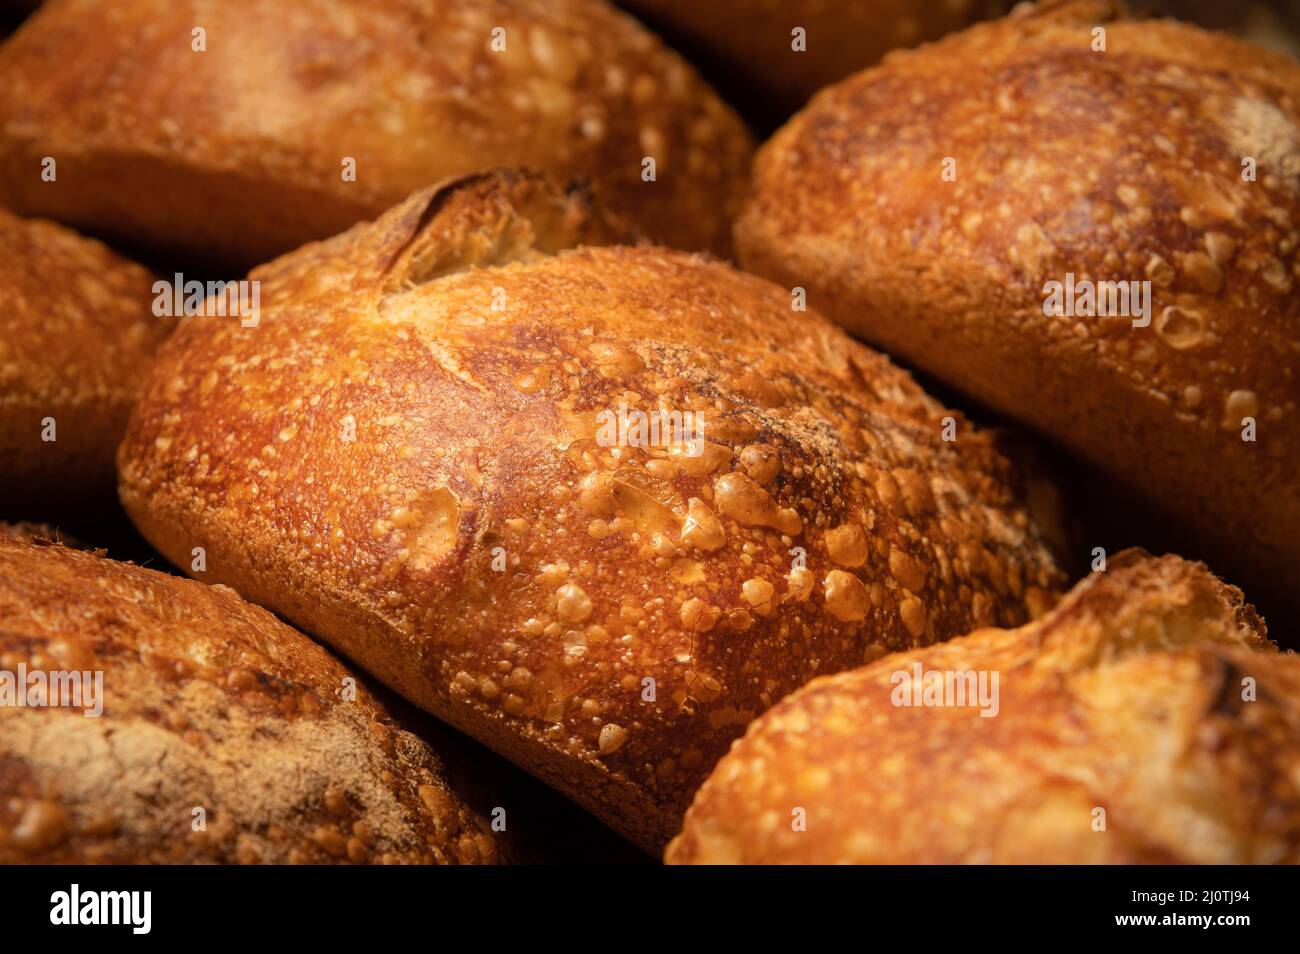 Frisch gebackene heiße Laibe knusprig hausgemachtes Brot aus nächster Nähe. Gesunde Lebensmittel und richtige Ernährung Stockfoto